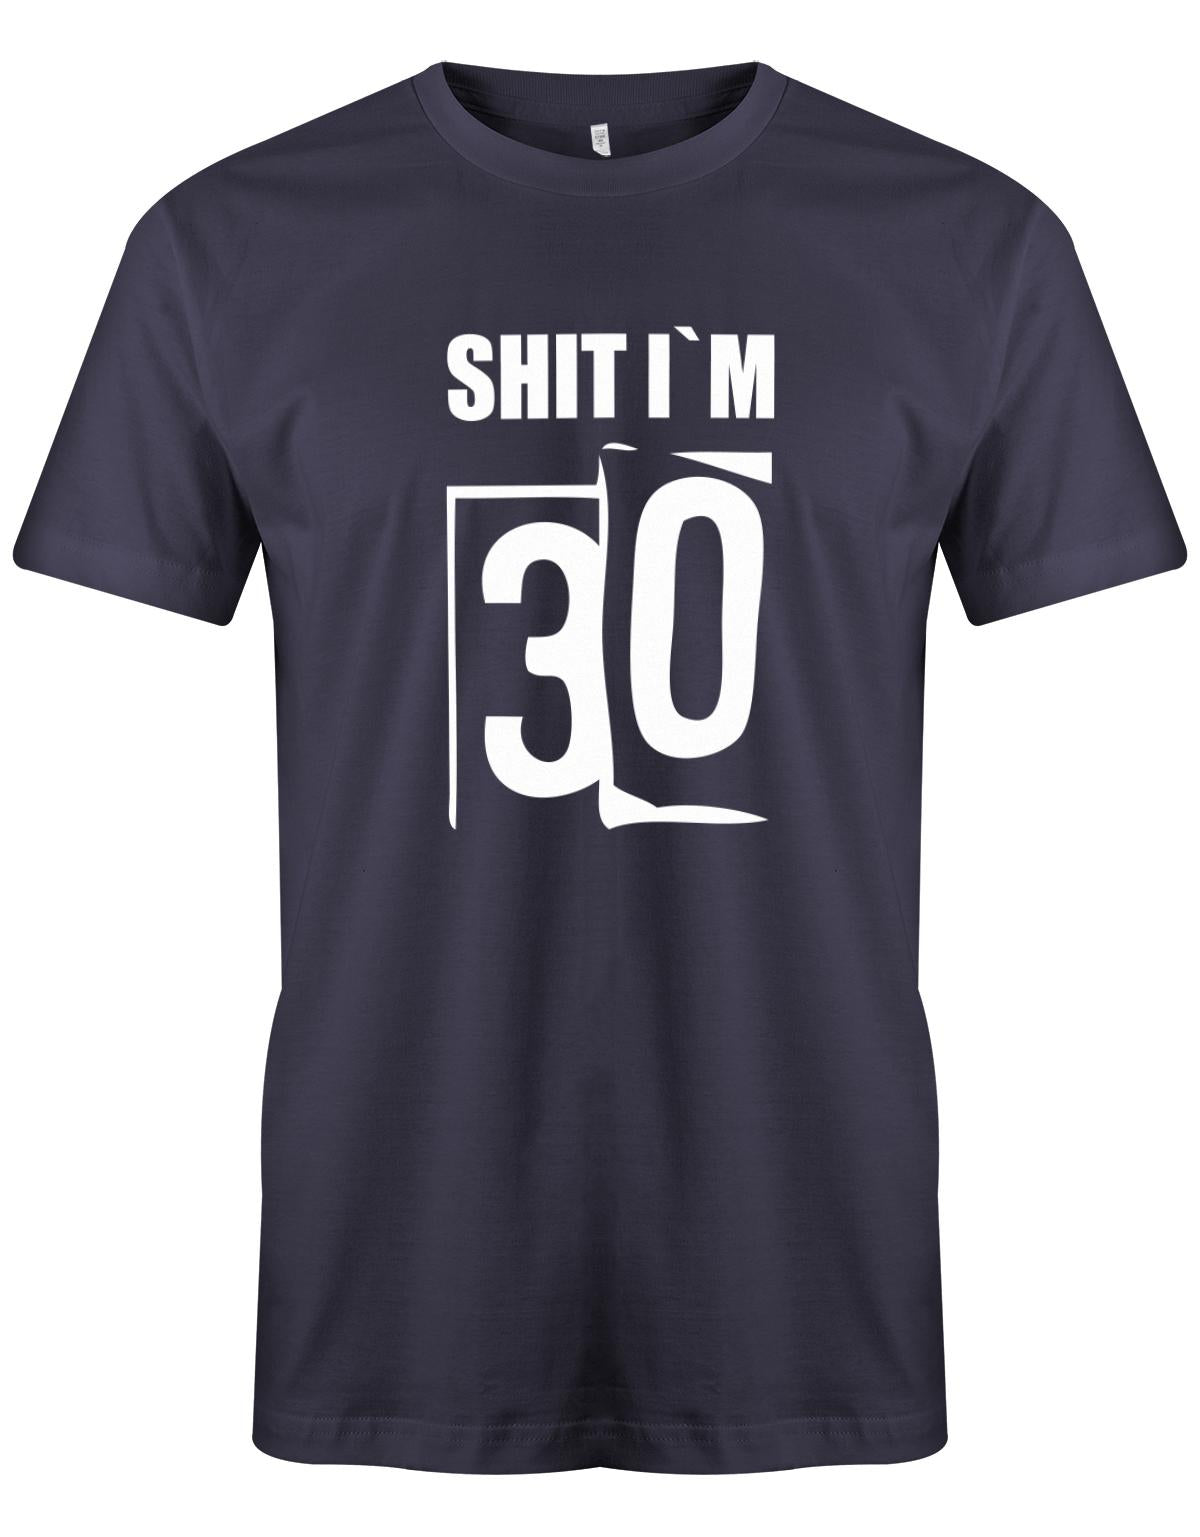 Lustiges T-Shirt zum 30 Geburtstag für den Mann Bedruckt mit: Shirt I´m 30 Thirty. Das T Shirt 30 Geburtstag Mann Lustig ist eine super Geschenkidee für alle 30 Jährigen. Man wird nur einmal 30 Jahre. 30 geburtstag Männer Shirt ✓ 1993 geburtstag shirt ✓ t-shirt zum 30 geburtstag mann ✓ shirt 30 mann Navy